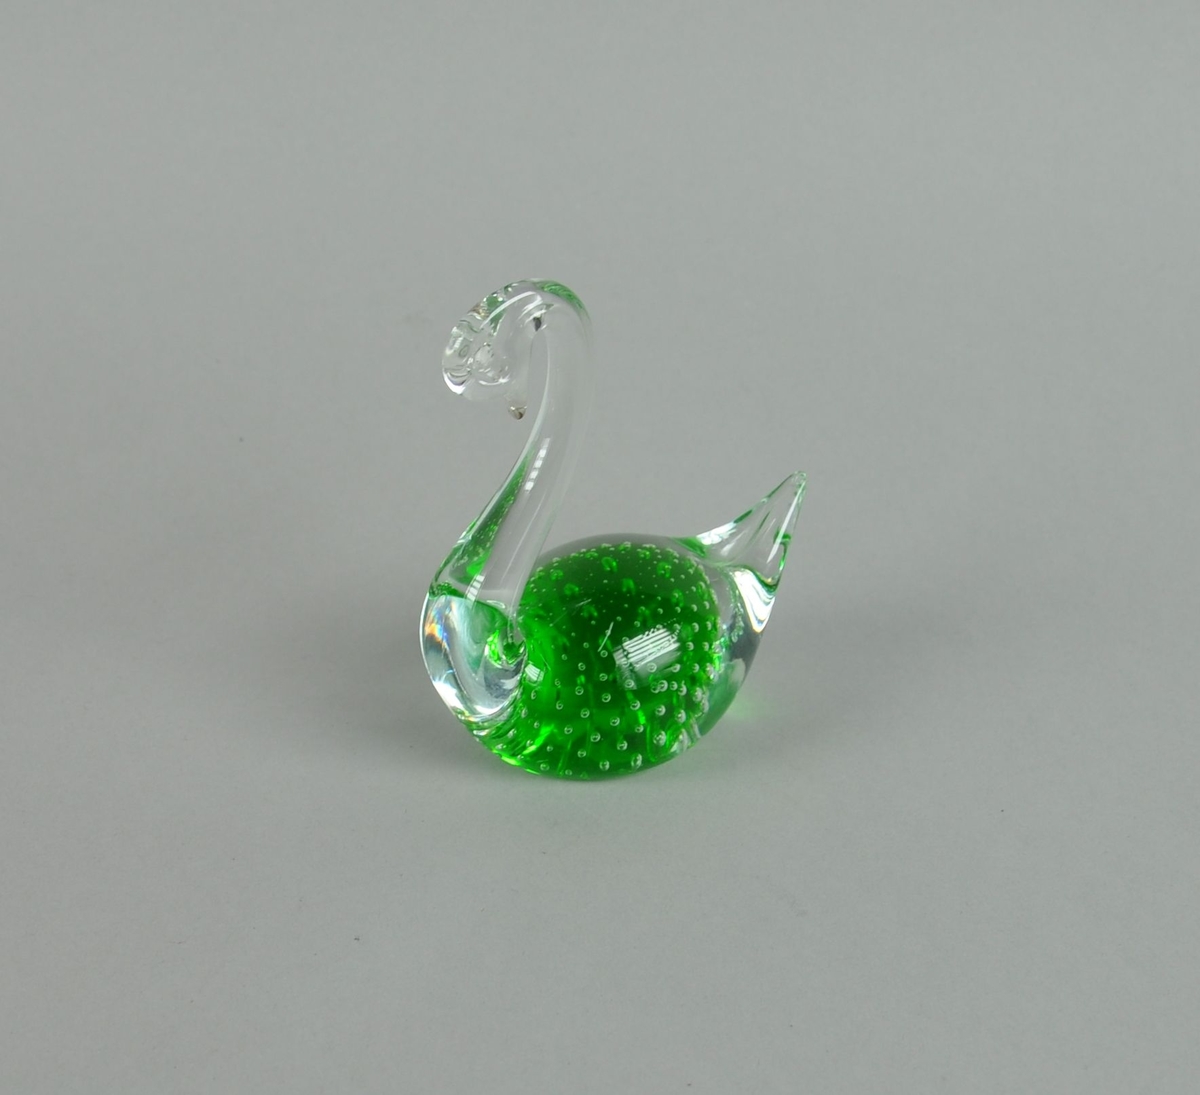 Glassfigur, forestiller svane. Glasset er grønt i midten, med dekorative bobler.